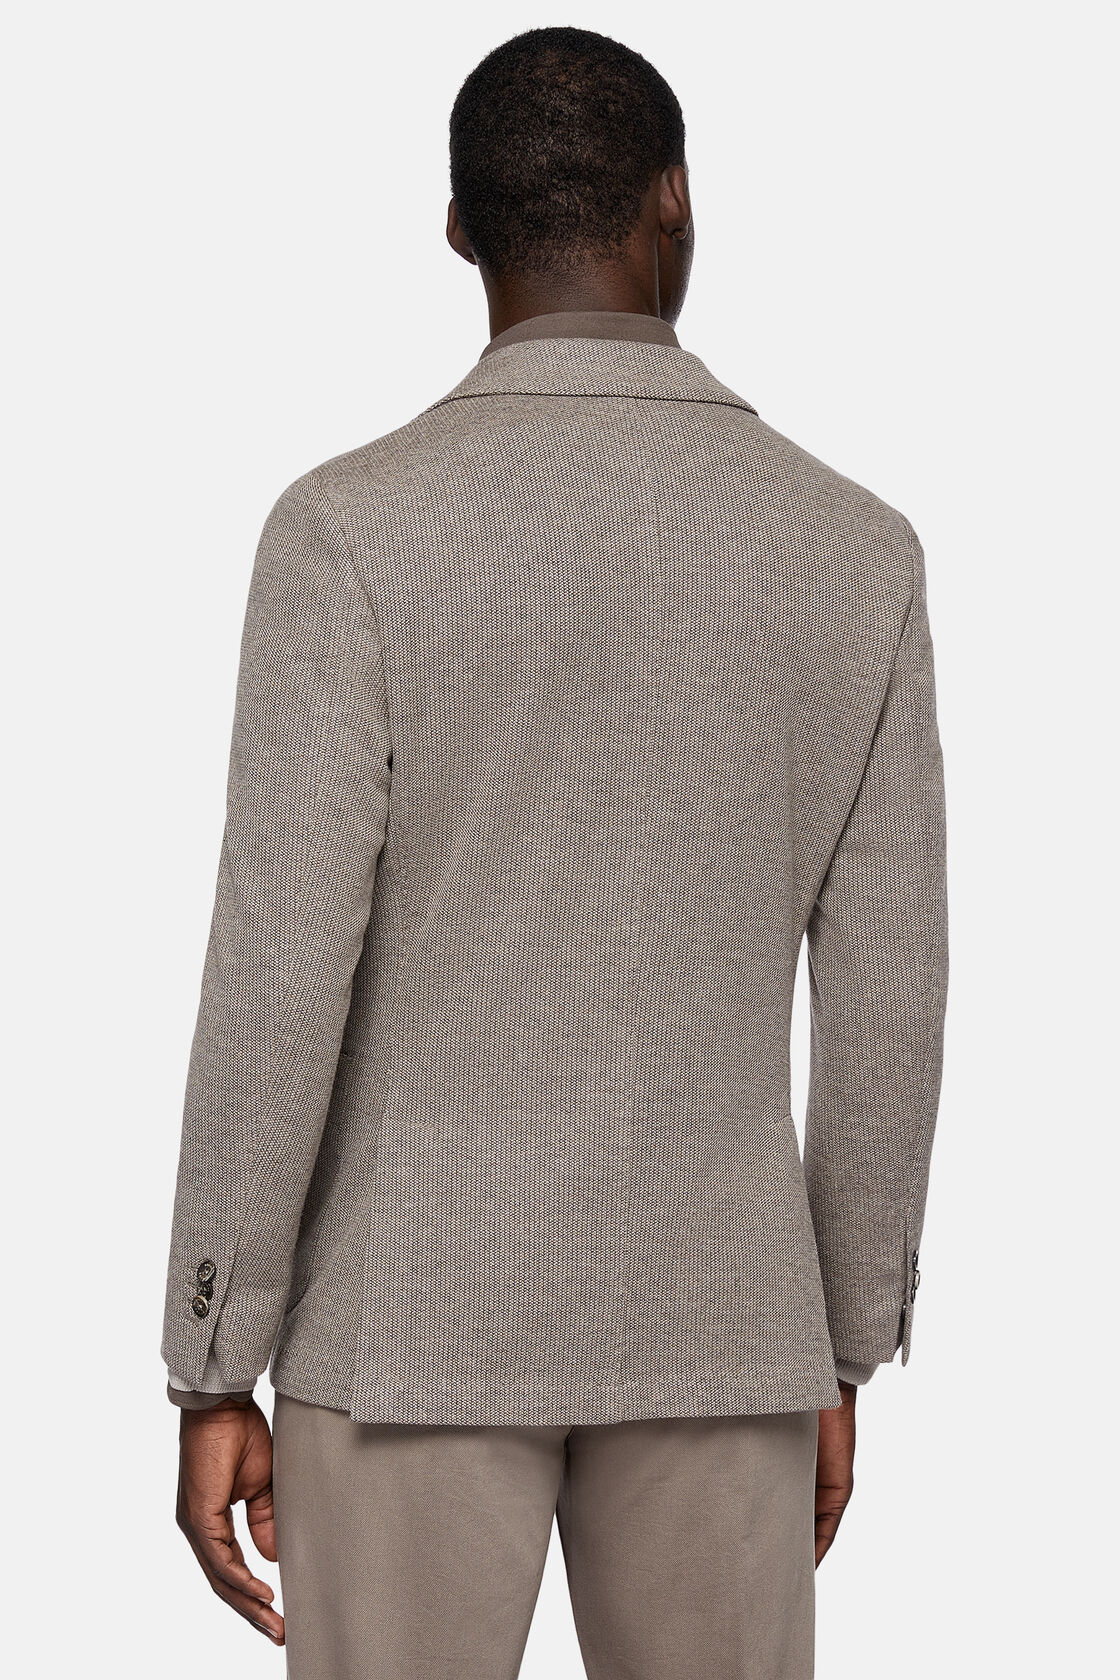 Σακάκι της σειράς B Jersey, από σύμμεικτο βαμβάκι, σε γκρι ανοιχτό χρώμα, Taupe, hi-res